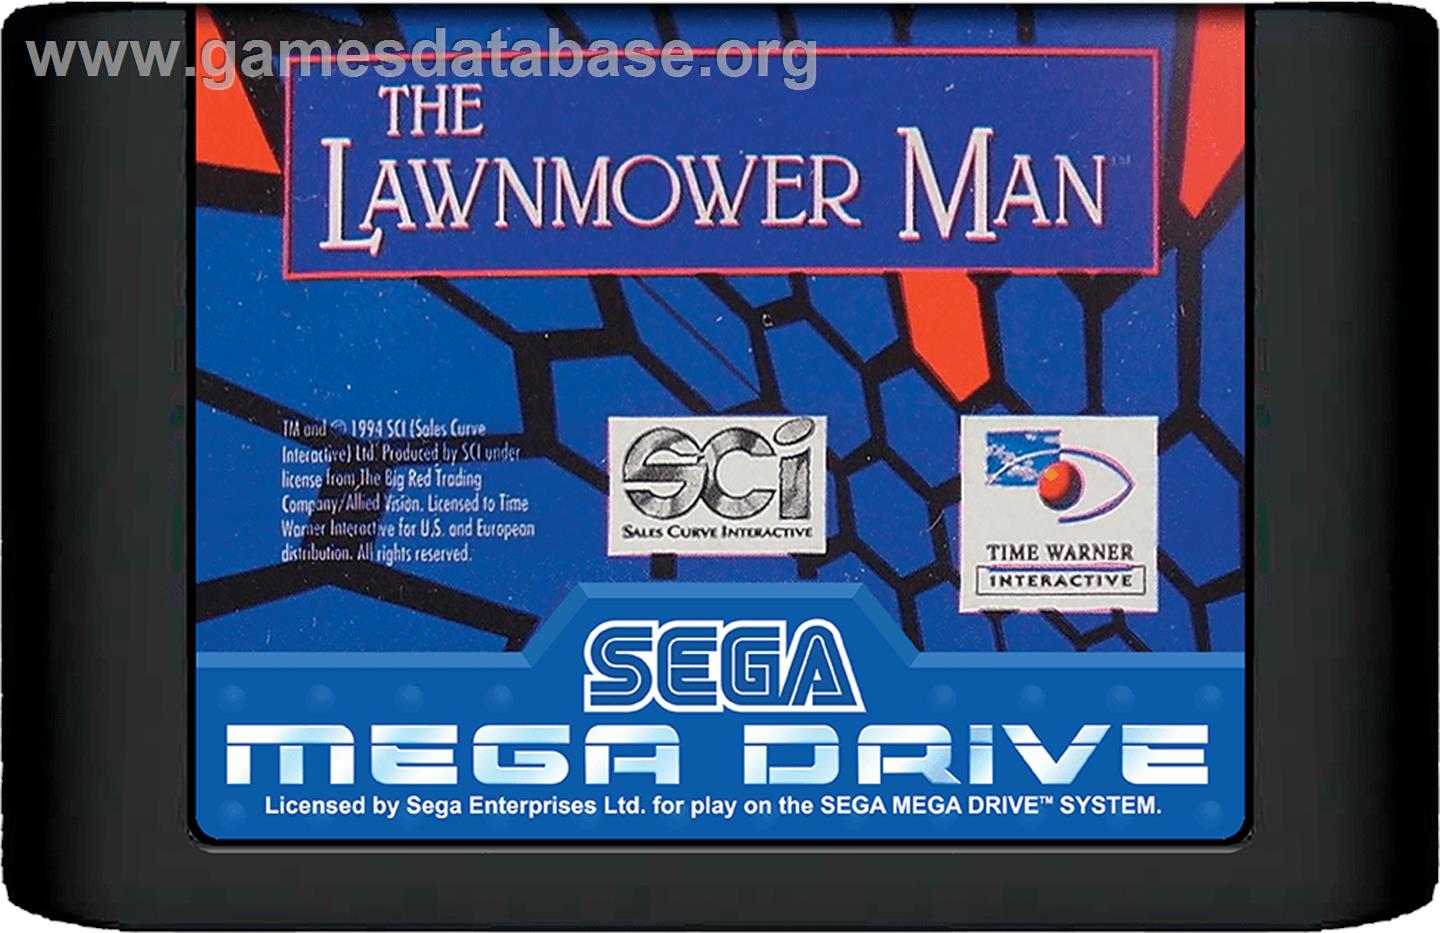 Lawnmower Man, The - Sega Genesis - Artwork - Cartridge